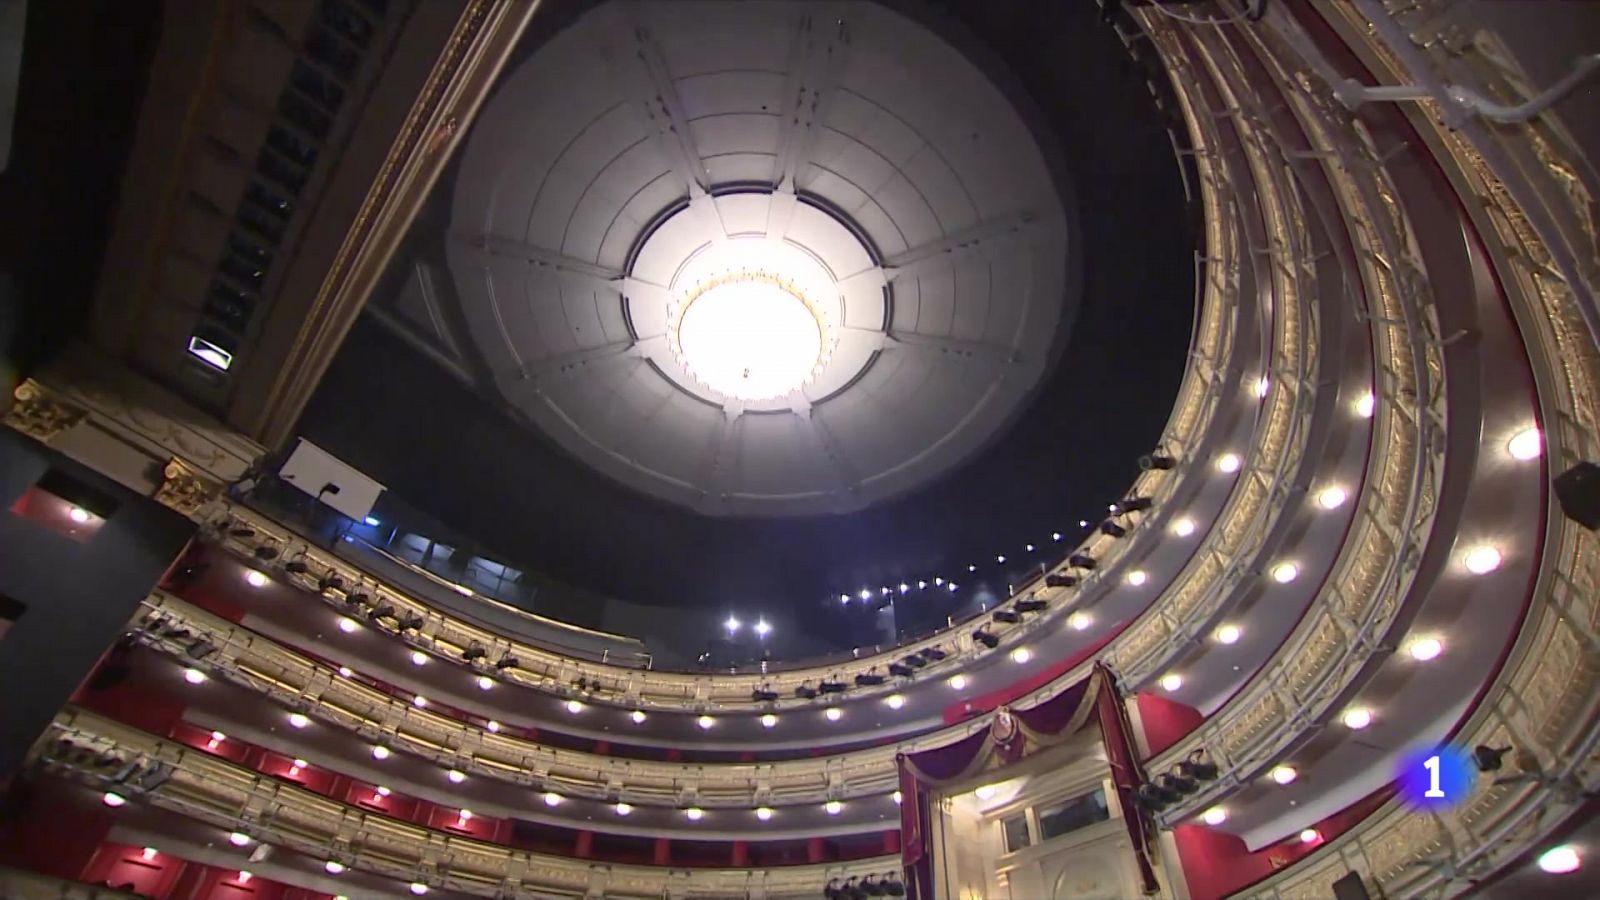 Iggy Pop ofrece un concierto inolvidable en el Teatro Real de Madrid   